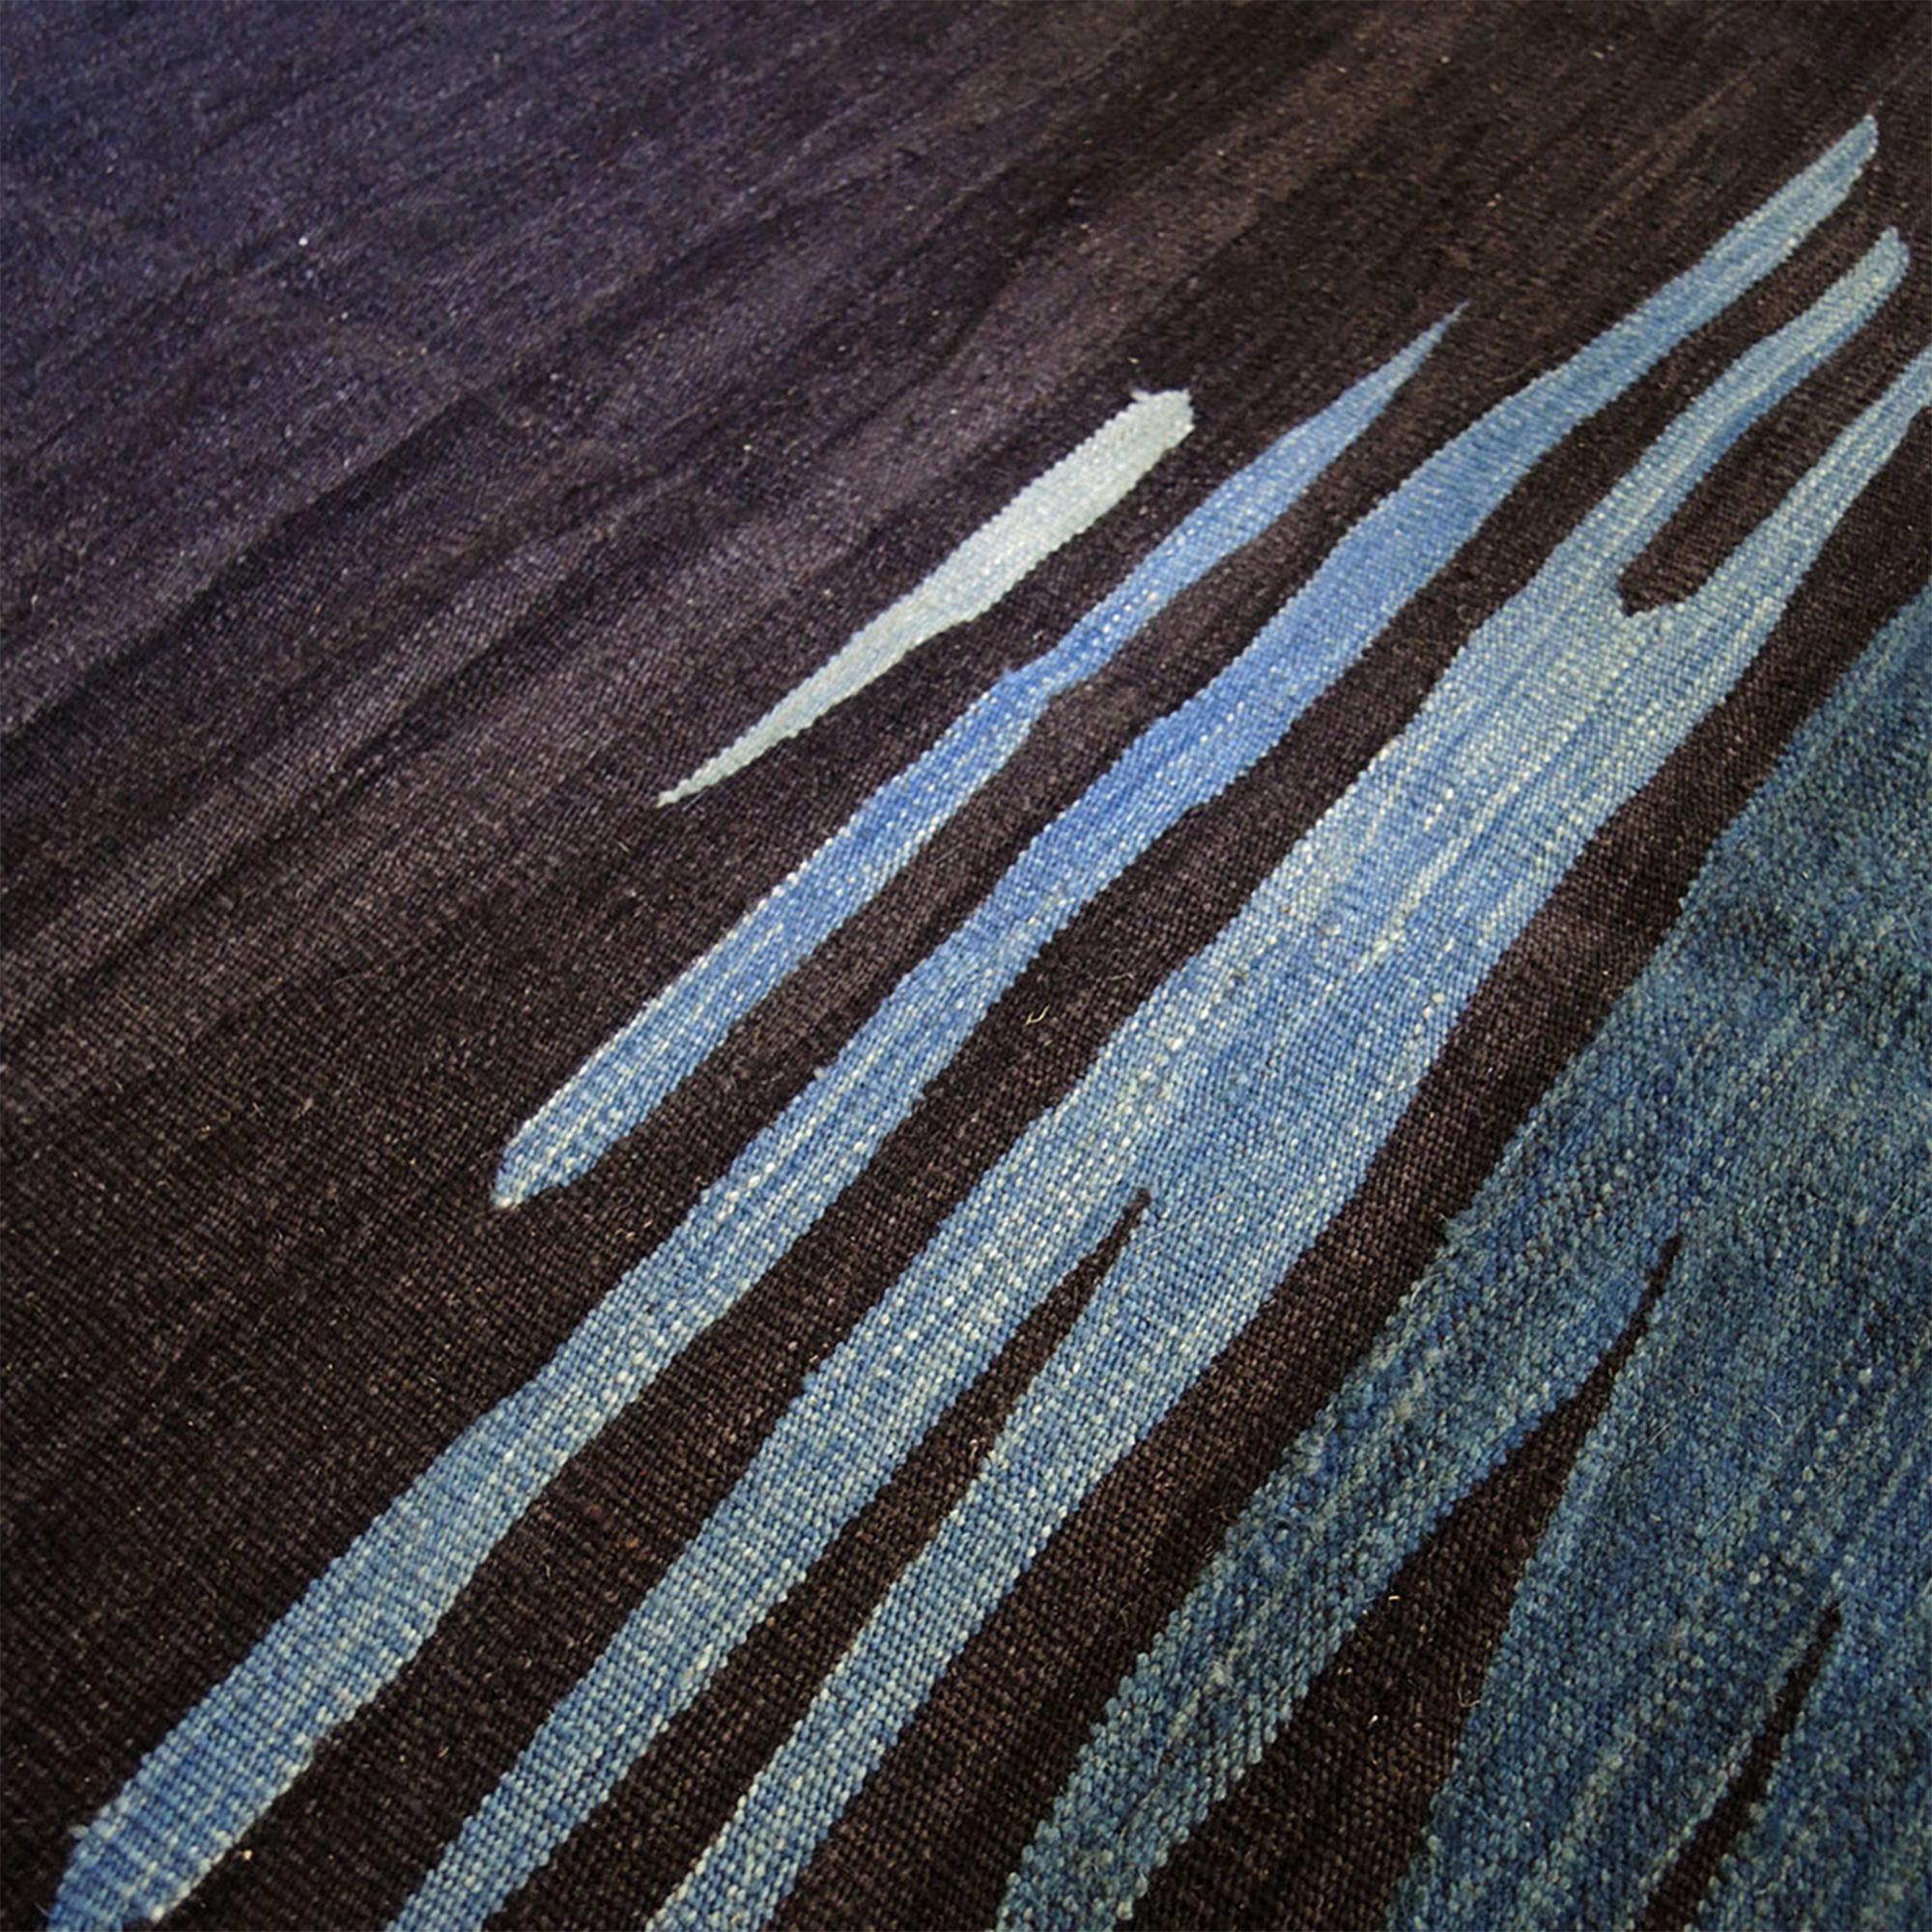 Le tapis kilim Ege No 1 fait partie d'une série de kilims qui reflètent une admiration pour l'expressivité visuelle et émotionnelle de la surface de la mer, avec ses mouvements fluides et ses reflets de couleurs qui créent un effet relaxant sur la